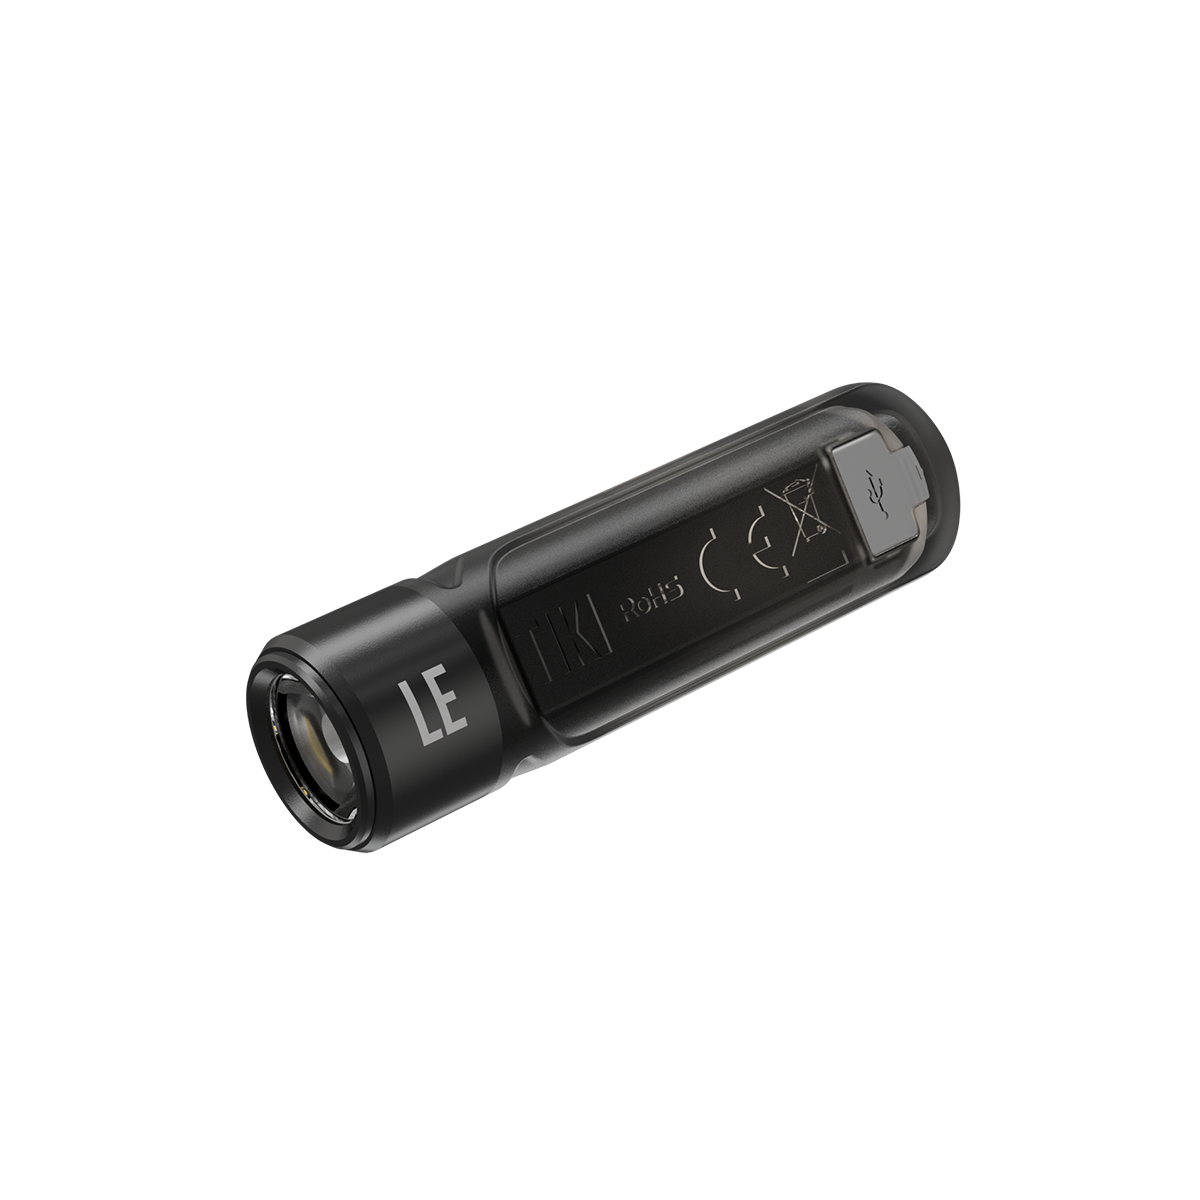 NITECORE TIKI LE 300 Lumen USB Rechargeable Keychain Flashlight aux Red/Blue LED